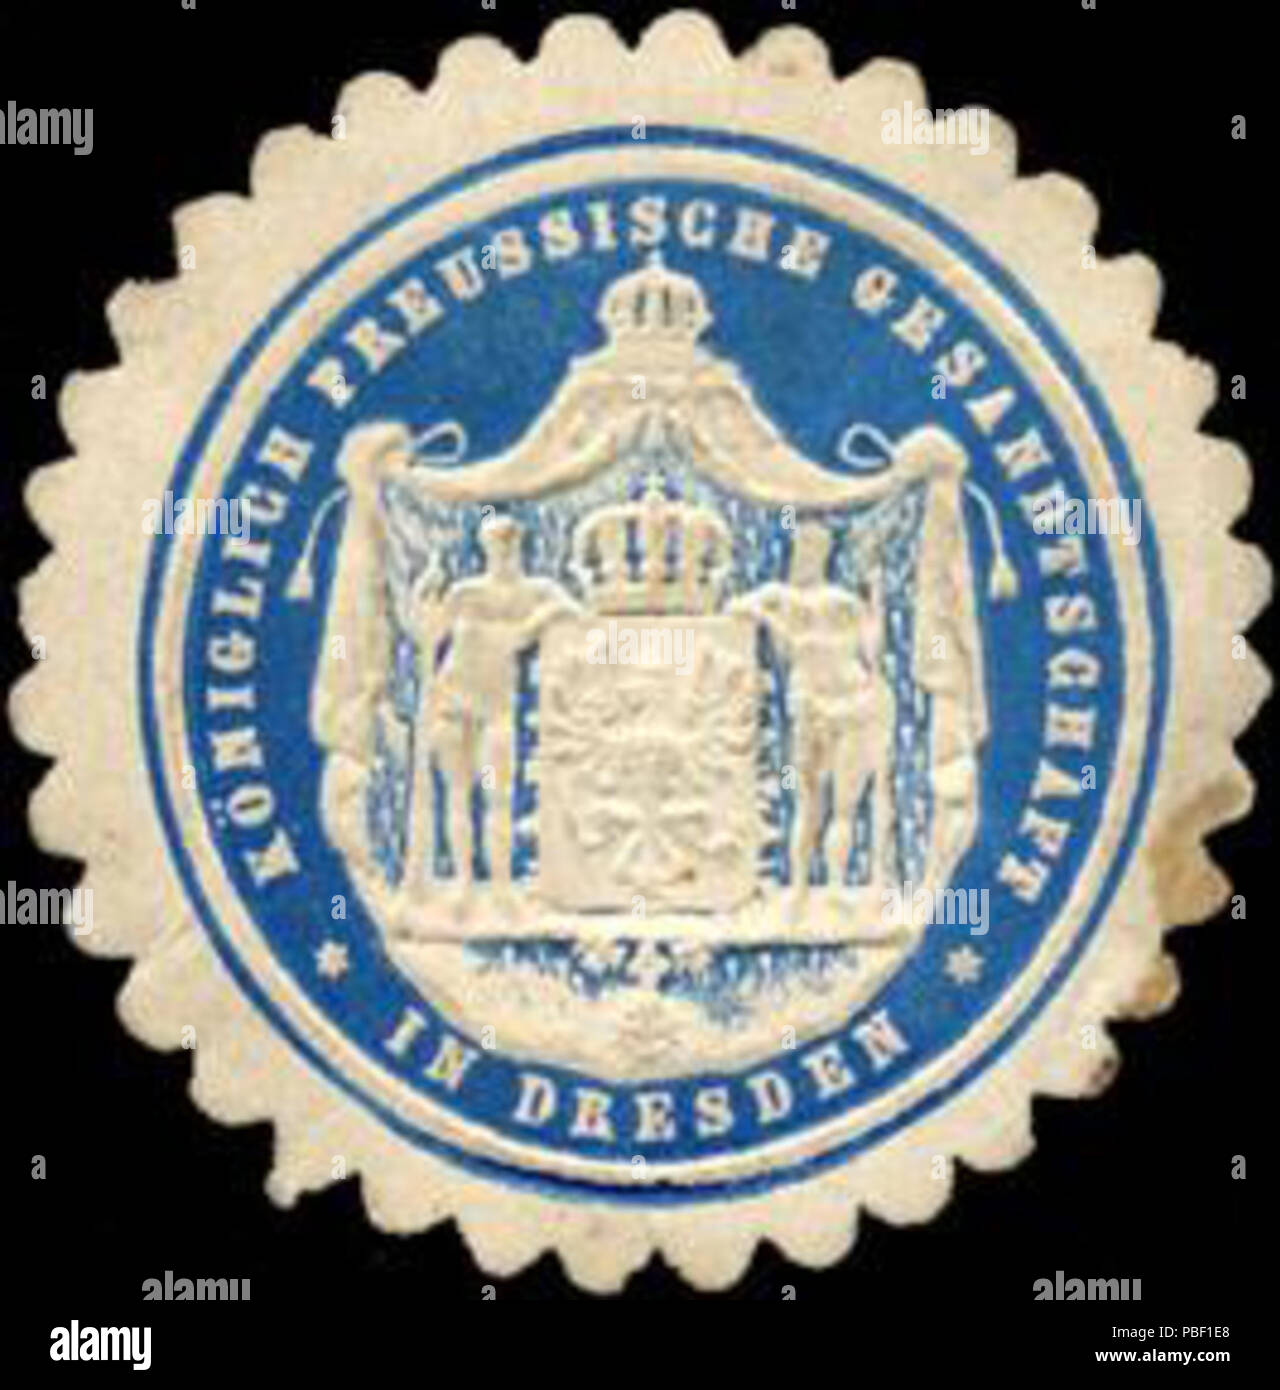 Alte Briefverschlussmarke aus Papier, welche seit ca. 1850 von Behoerden, Anwaelten, Notaren und Firmen zum verschliessen der Post verwendet wurde. 1452 Siegelmarke Königlich Preussische Gesandtschaft in Dresden W0223559 Stock Photo